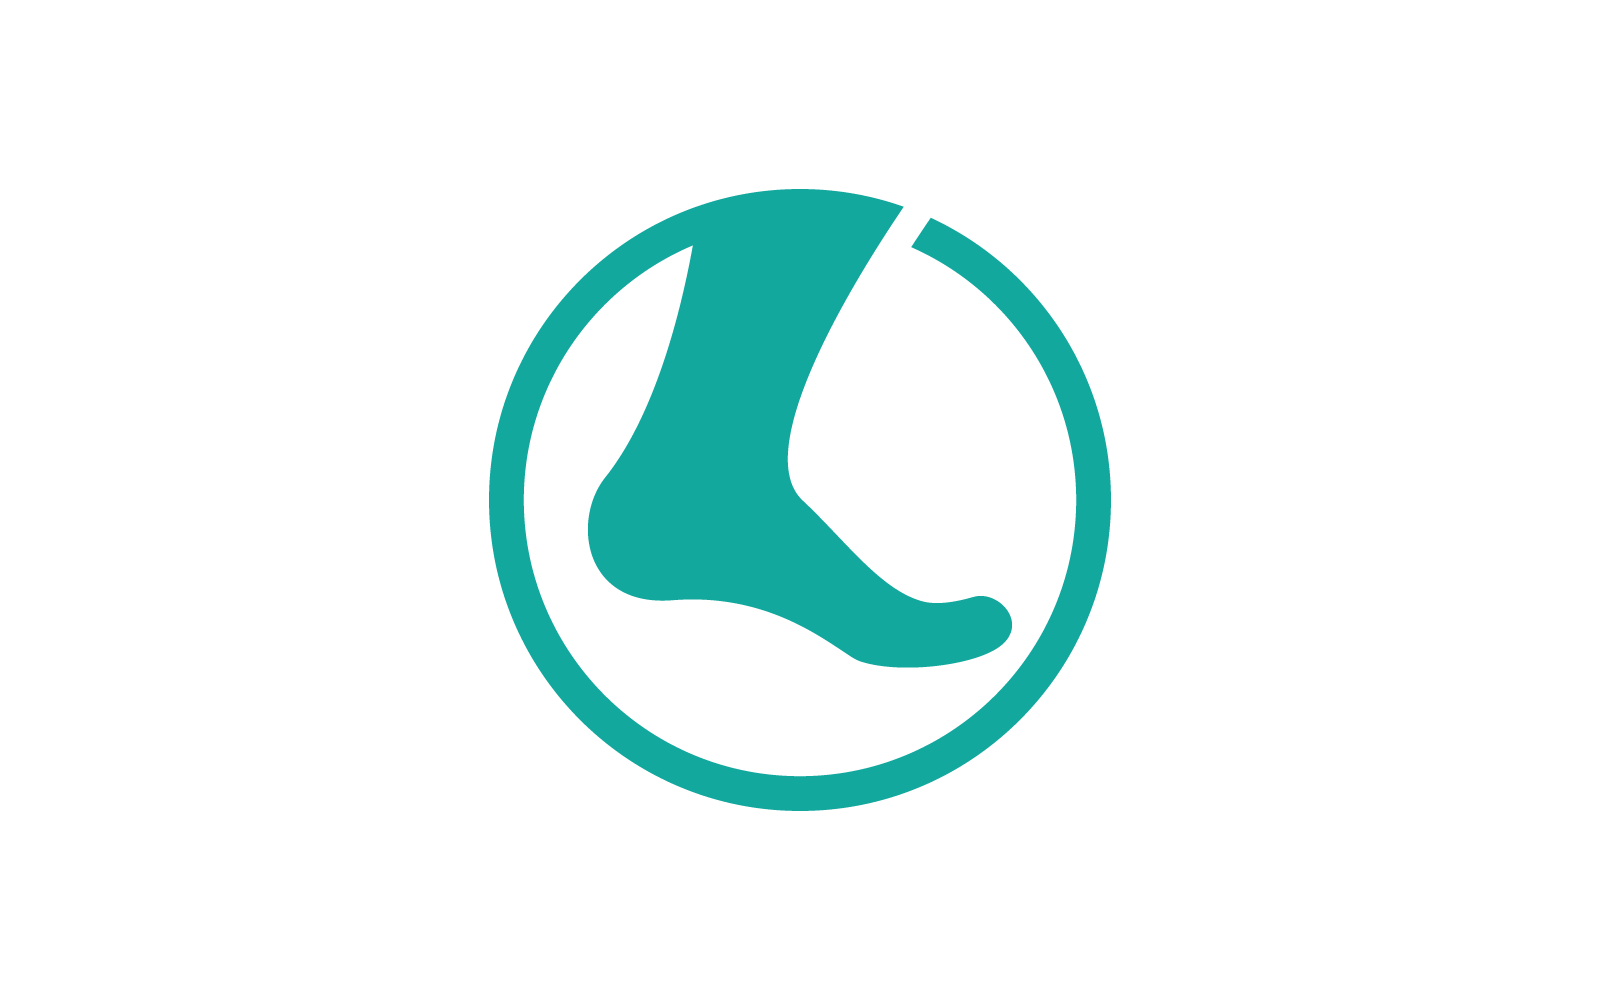 Foot illustration logo vector design Logo Template